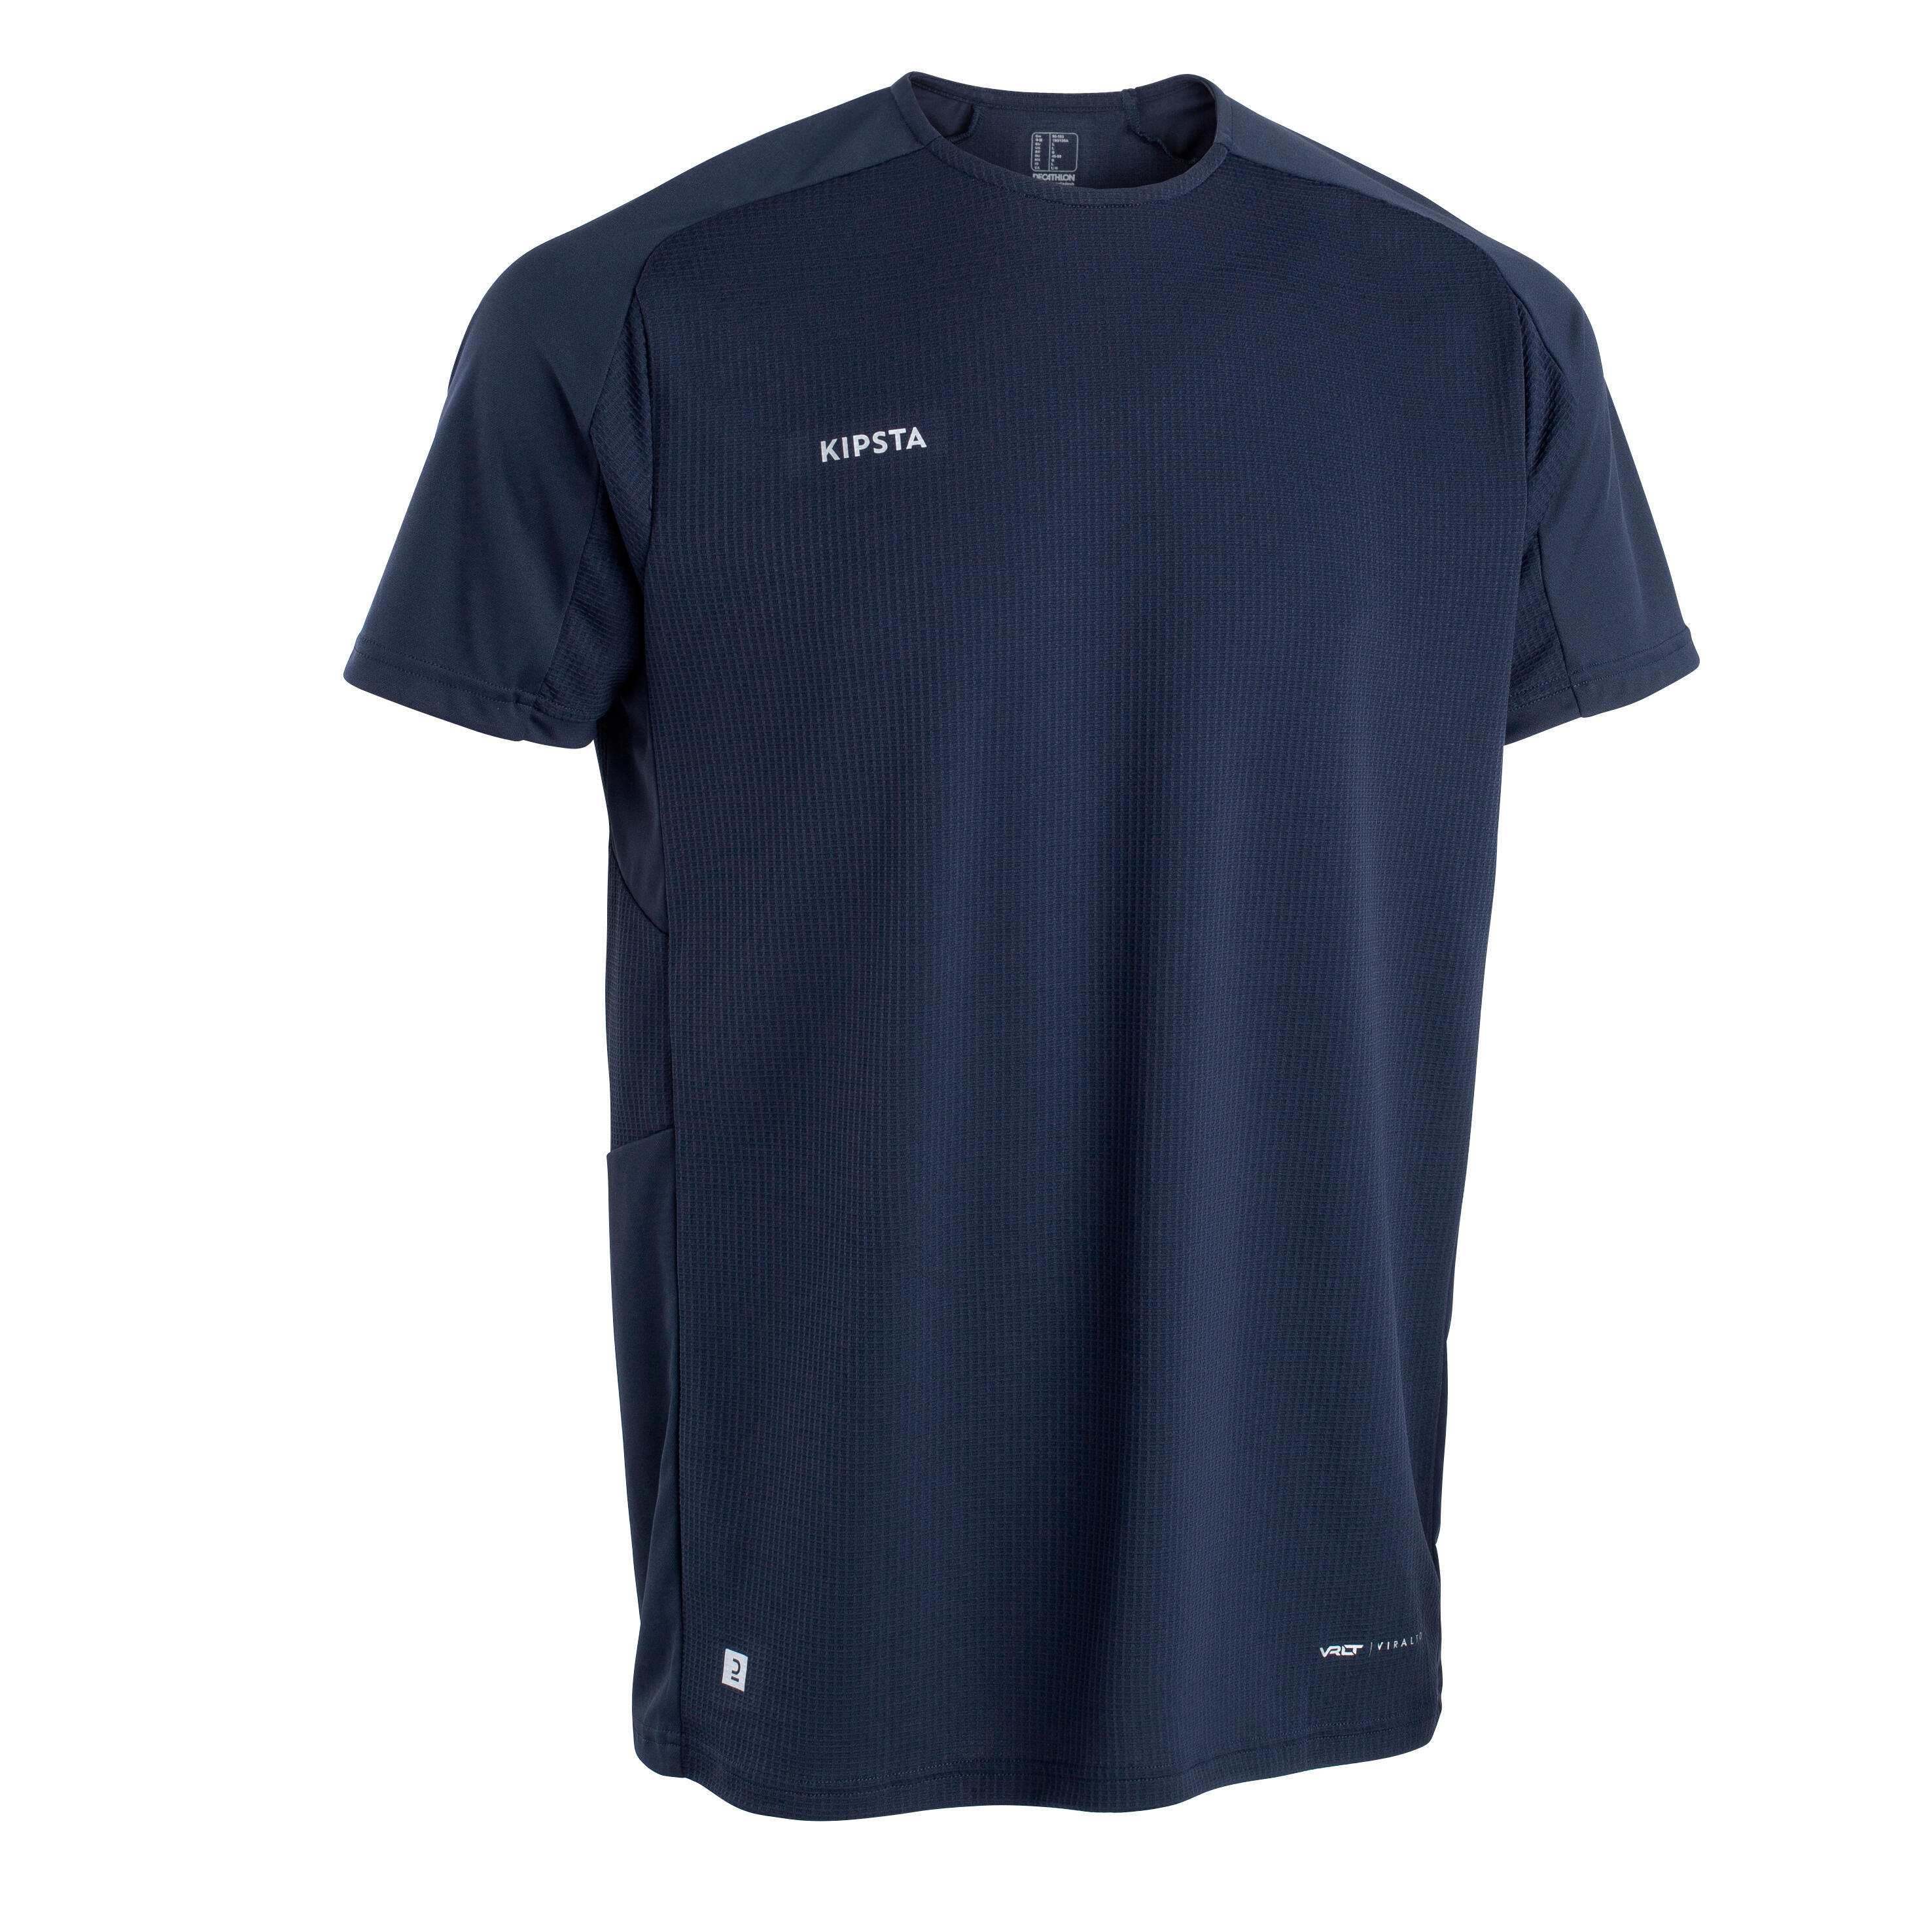 KIPSTA Short-Sleeved Football Shirt Viralto Club - Navy Blue